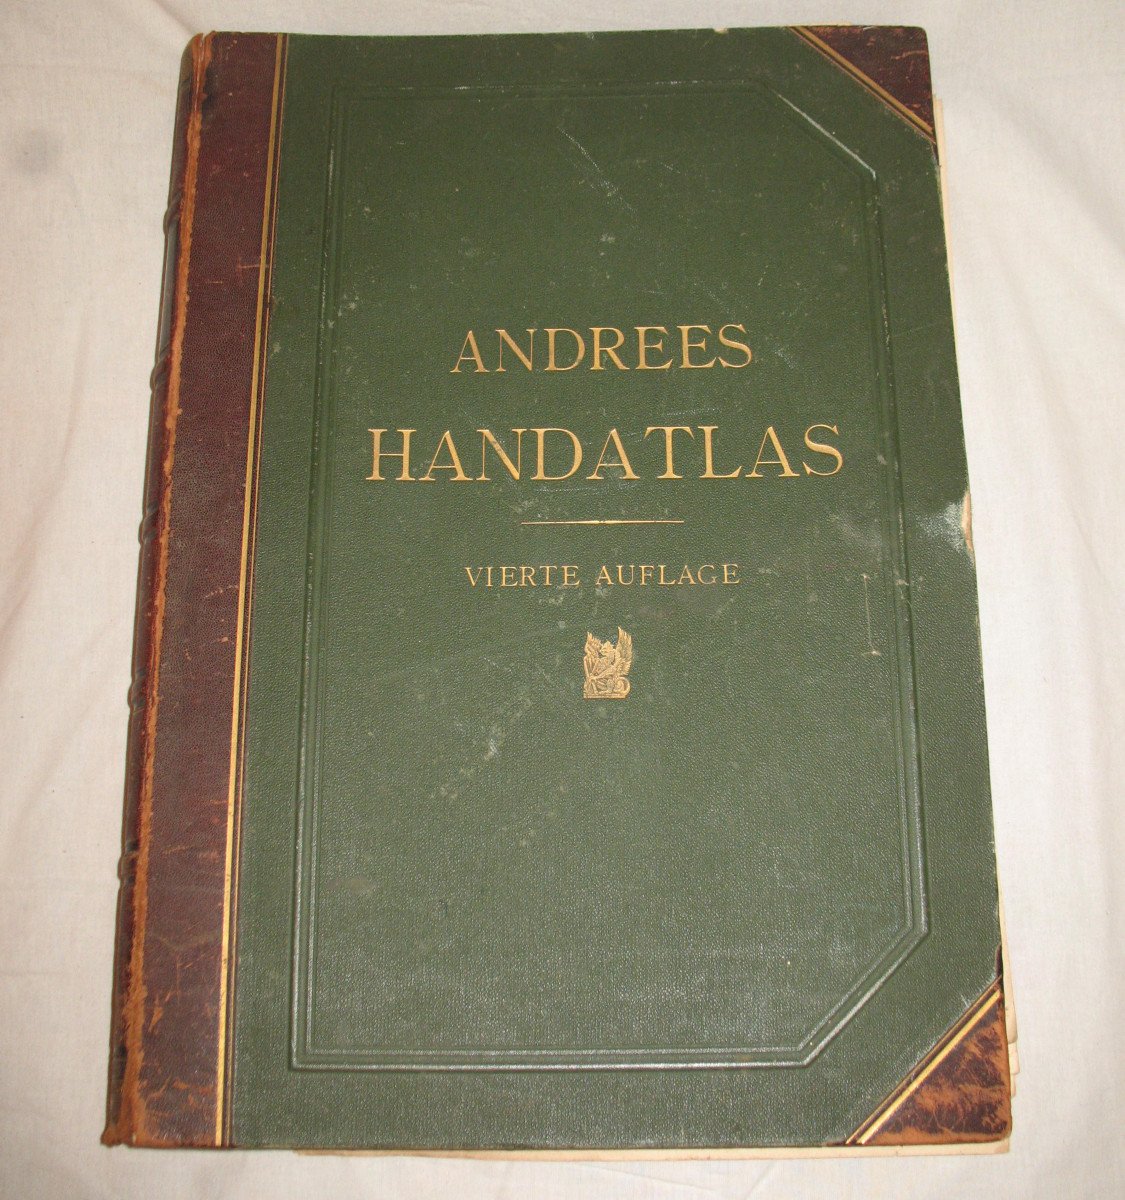 Handatlas de Andrees Recueil de cartes en langue allemande Atlas de 1899